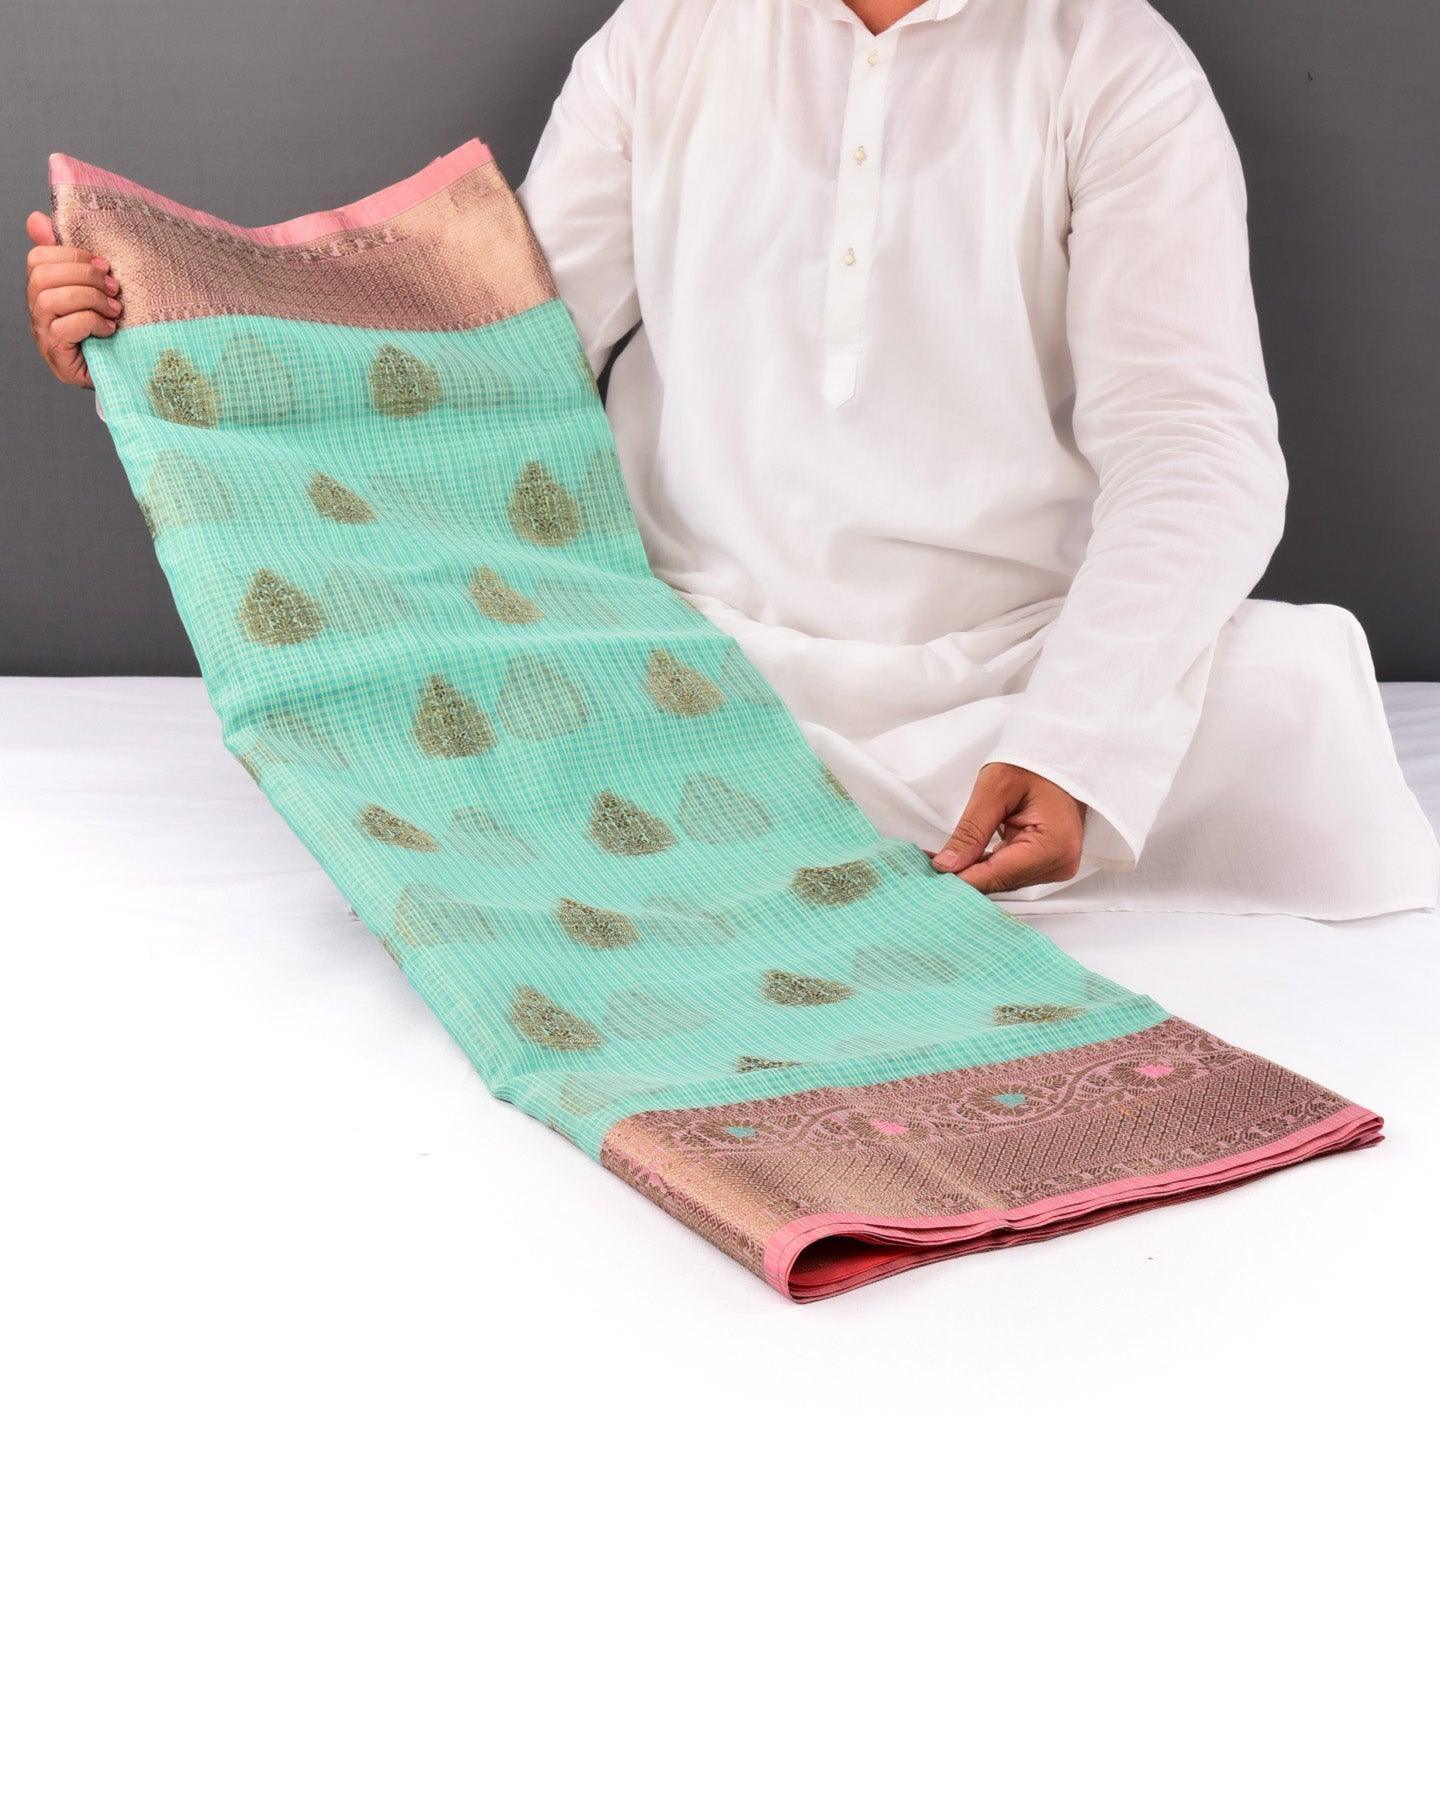 Green Banarasi Check Texture Antique Buta Cutwork Brocade Woven Cotton Silk Saree with Peach Border Pallu - By HolyWeaves, Benares